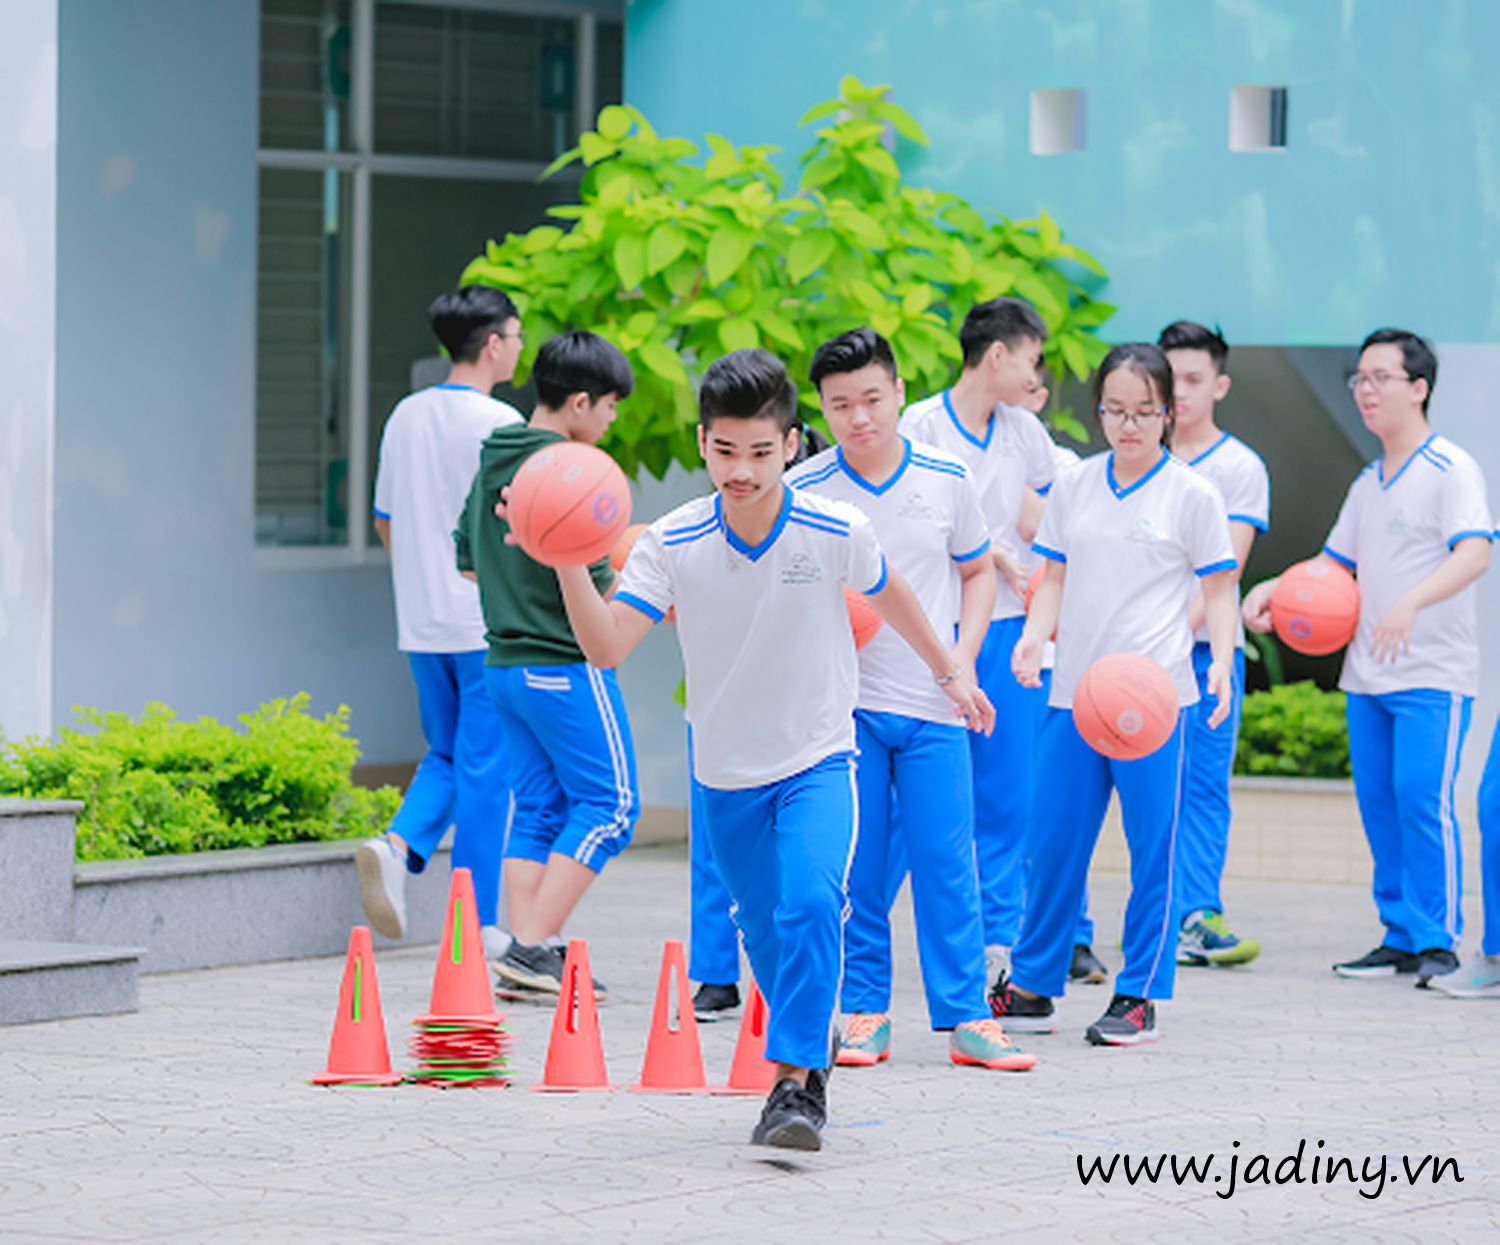 Xưởng may đồng phục thể dục học sinh ở Hà Nội